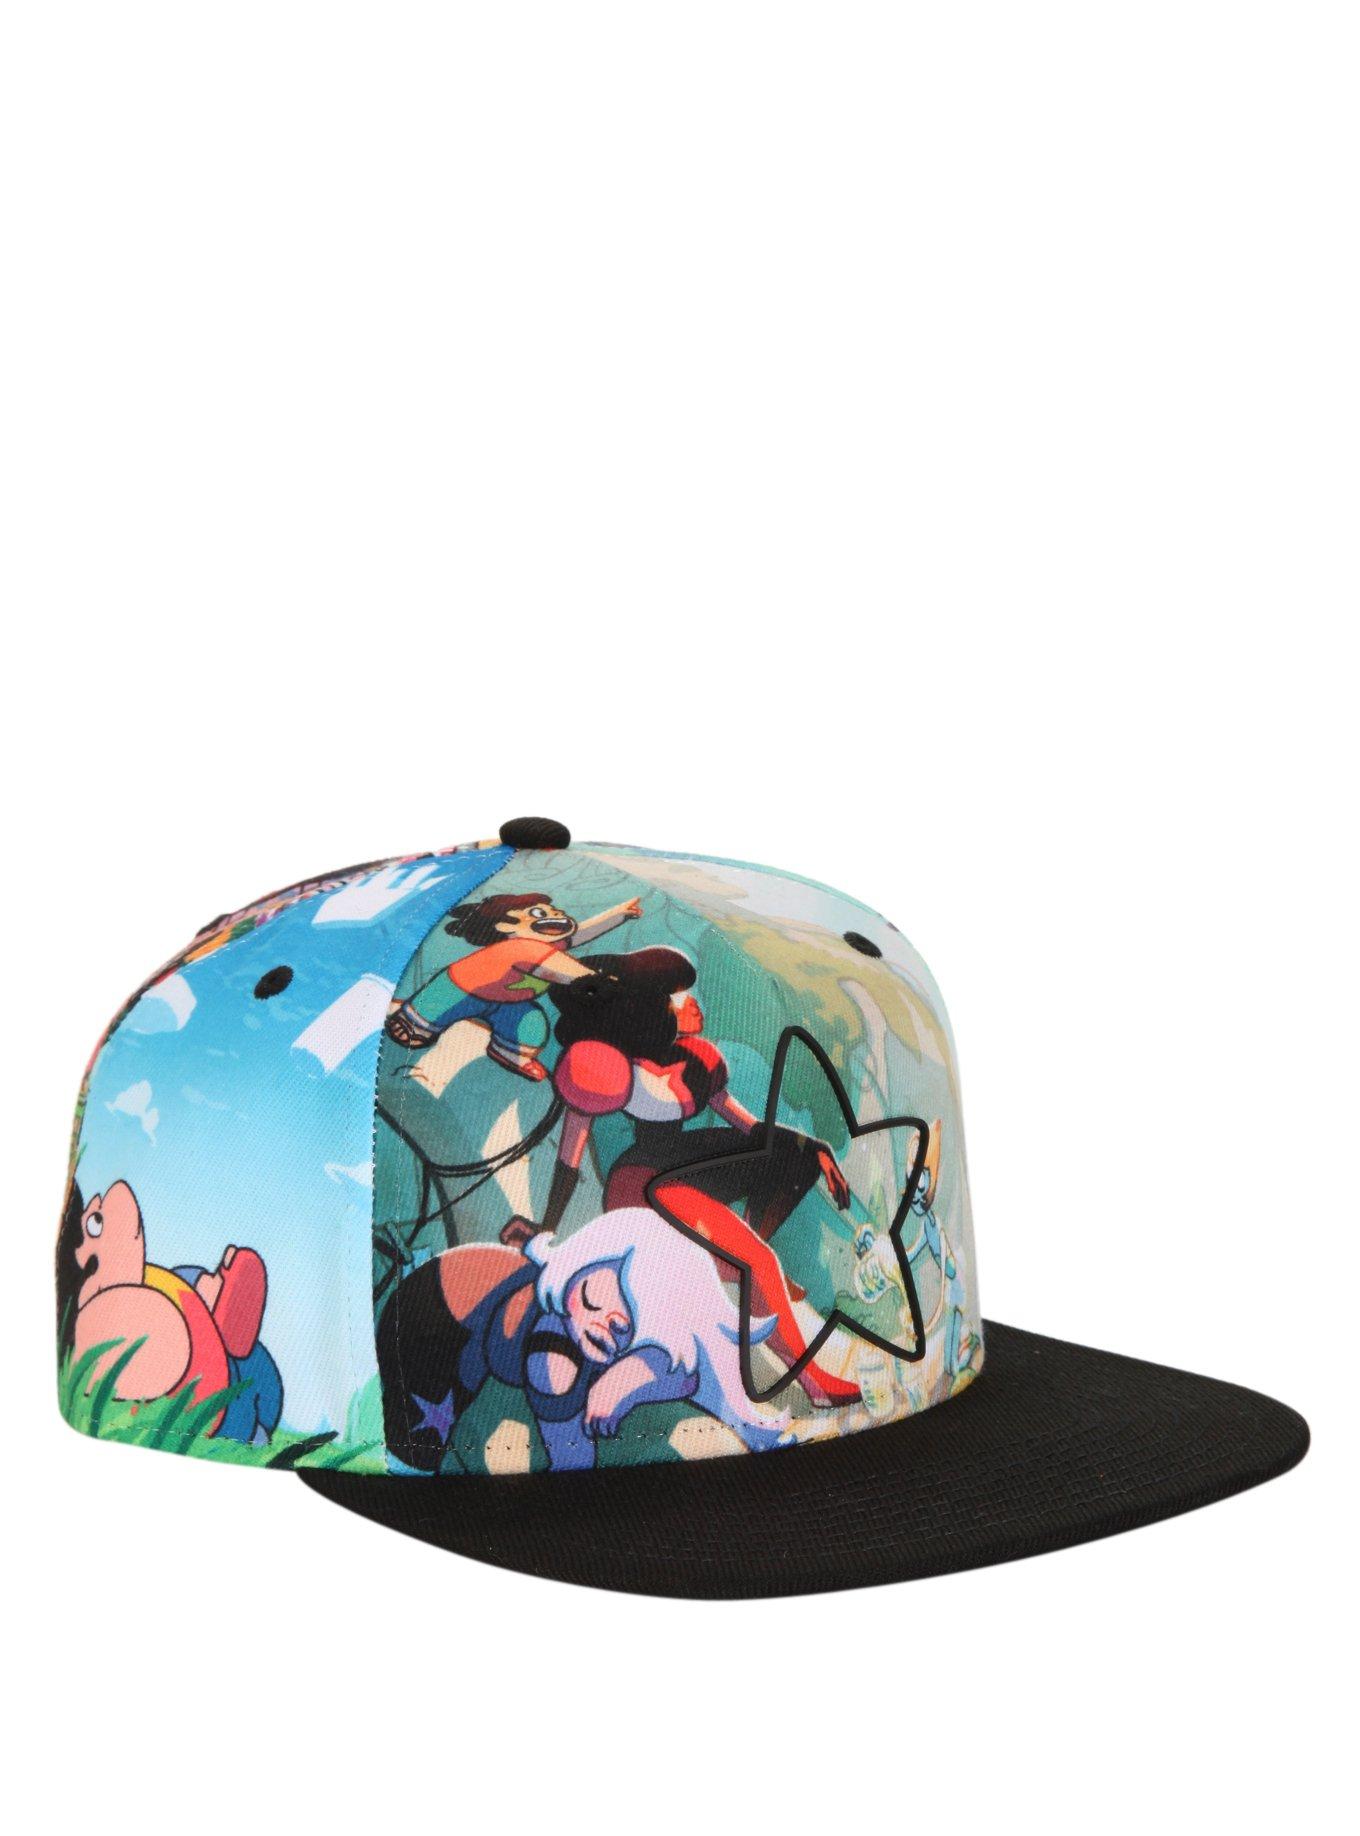 Steven Universe Star Allover Sublimation Snapback Hat, , hi-res